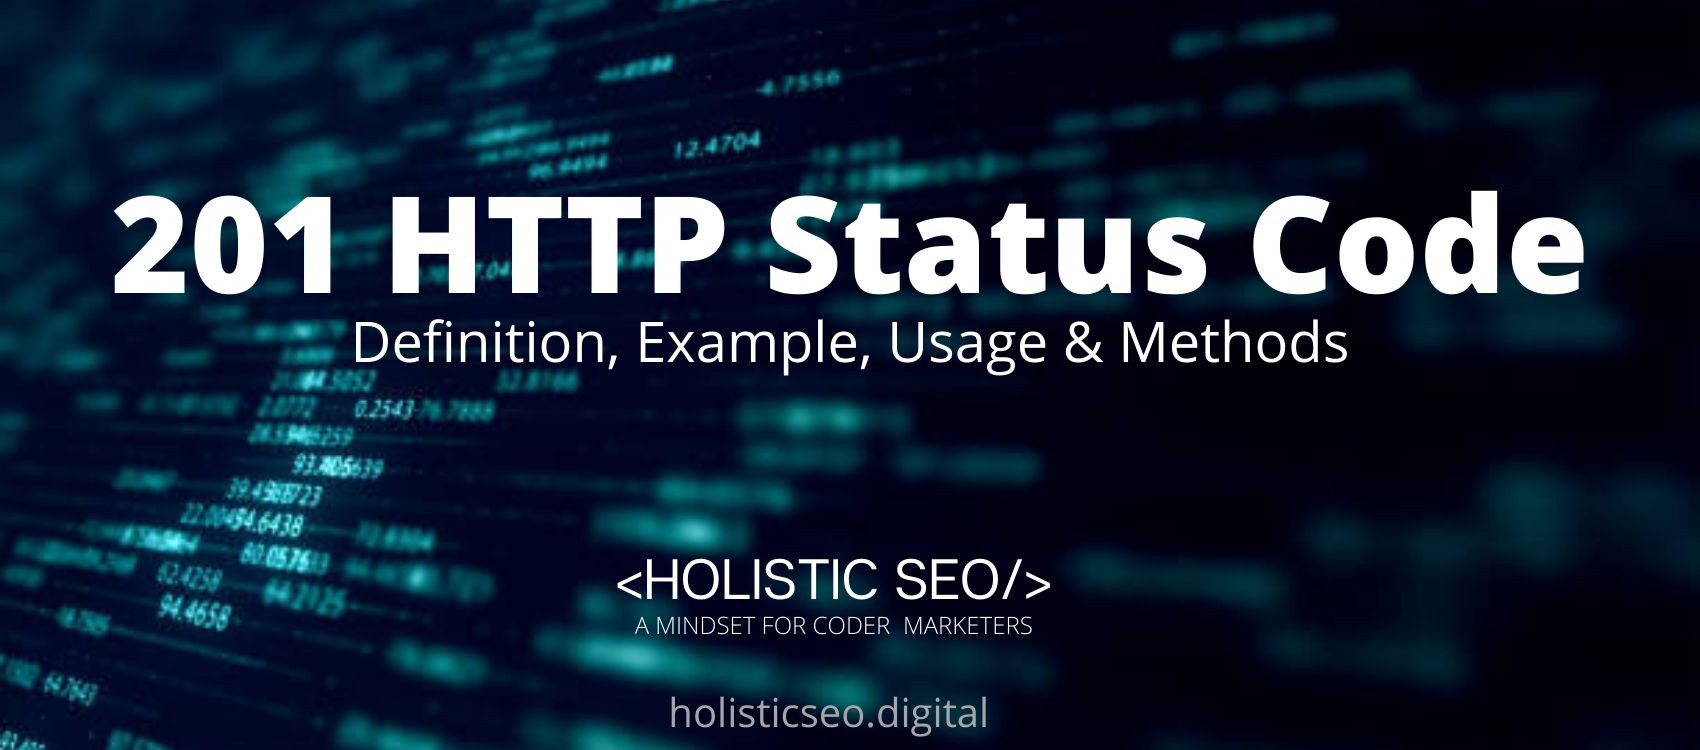 201 HTTP Status Code